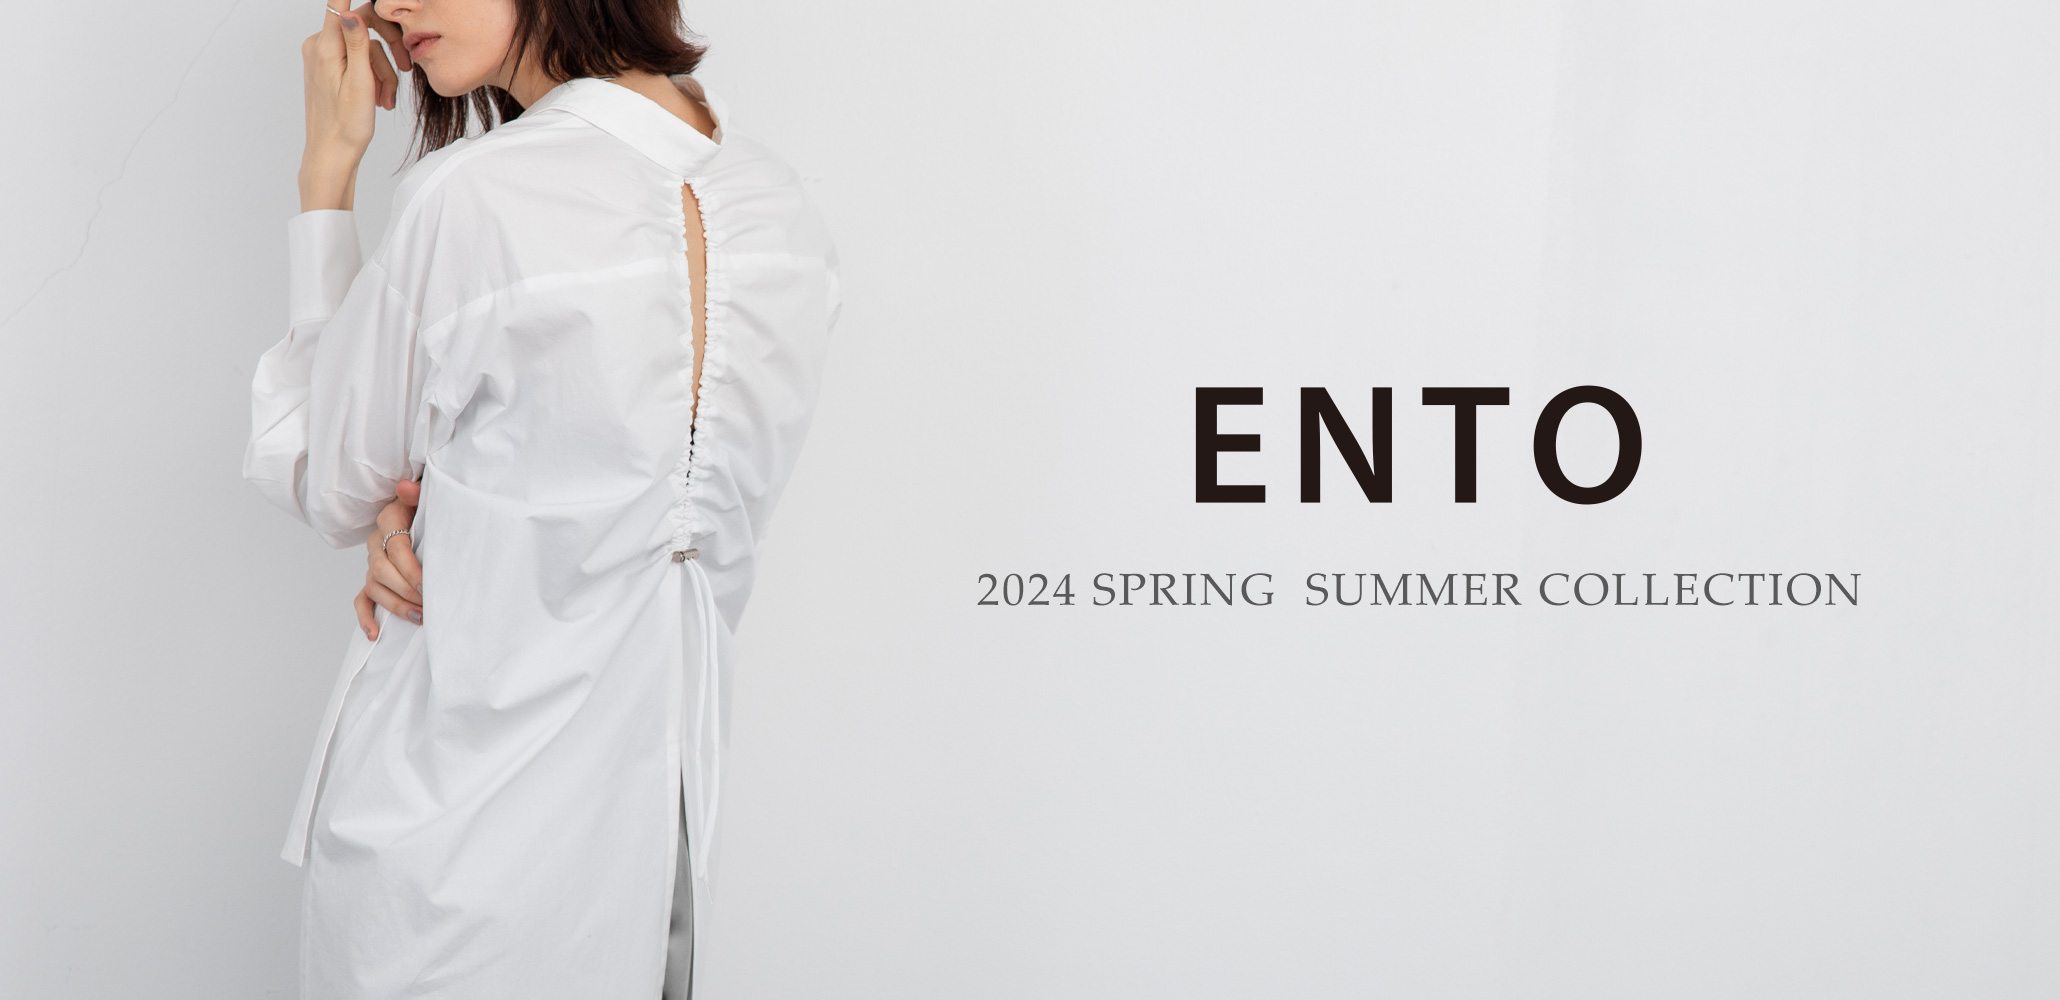 レディースファッションブランドento(エント)2024年春夏コレクション、質の良さと機能的なデザインで、長く愛着を持てる一着に出会える「ENTO(エント)」エコ素材やウォッシャブル、2way、撥水などの機能性に優れたアイテムを展開！